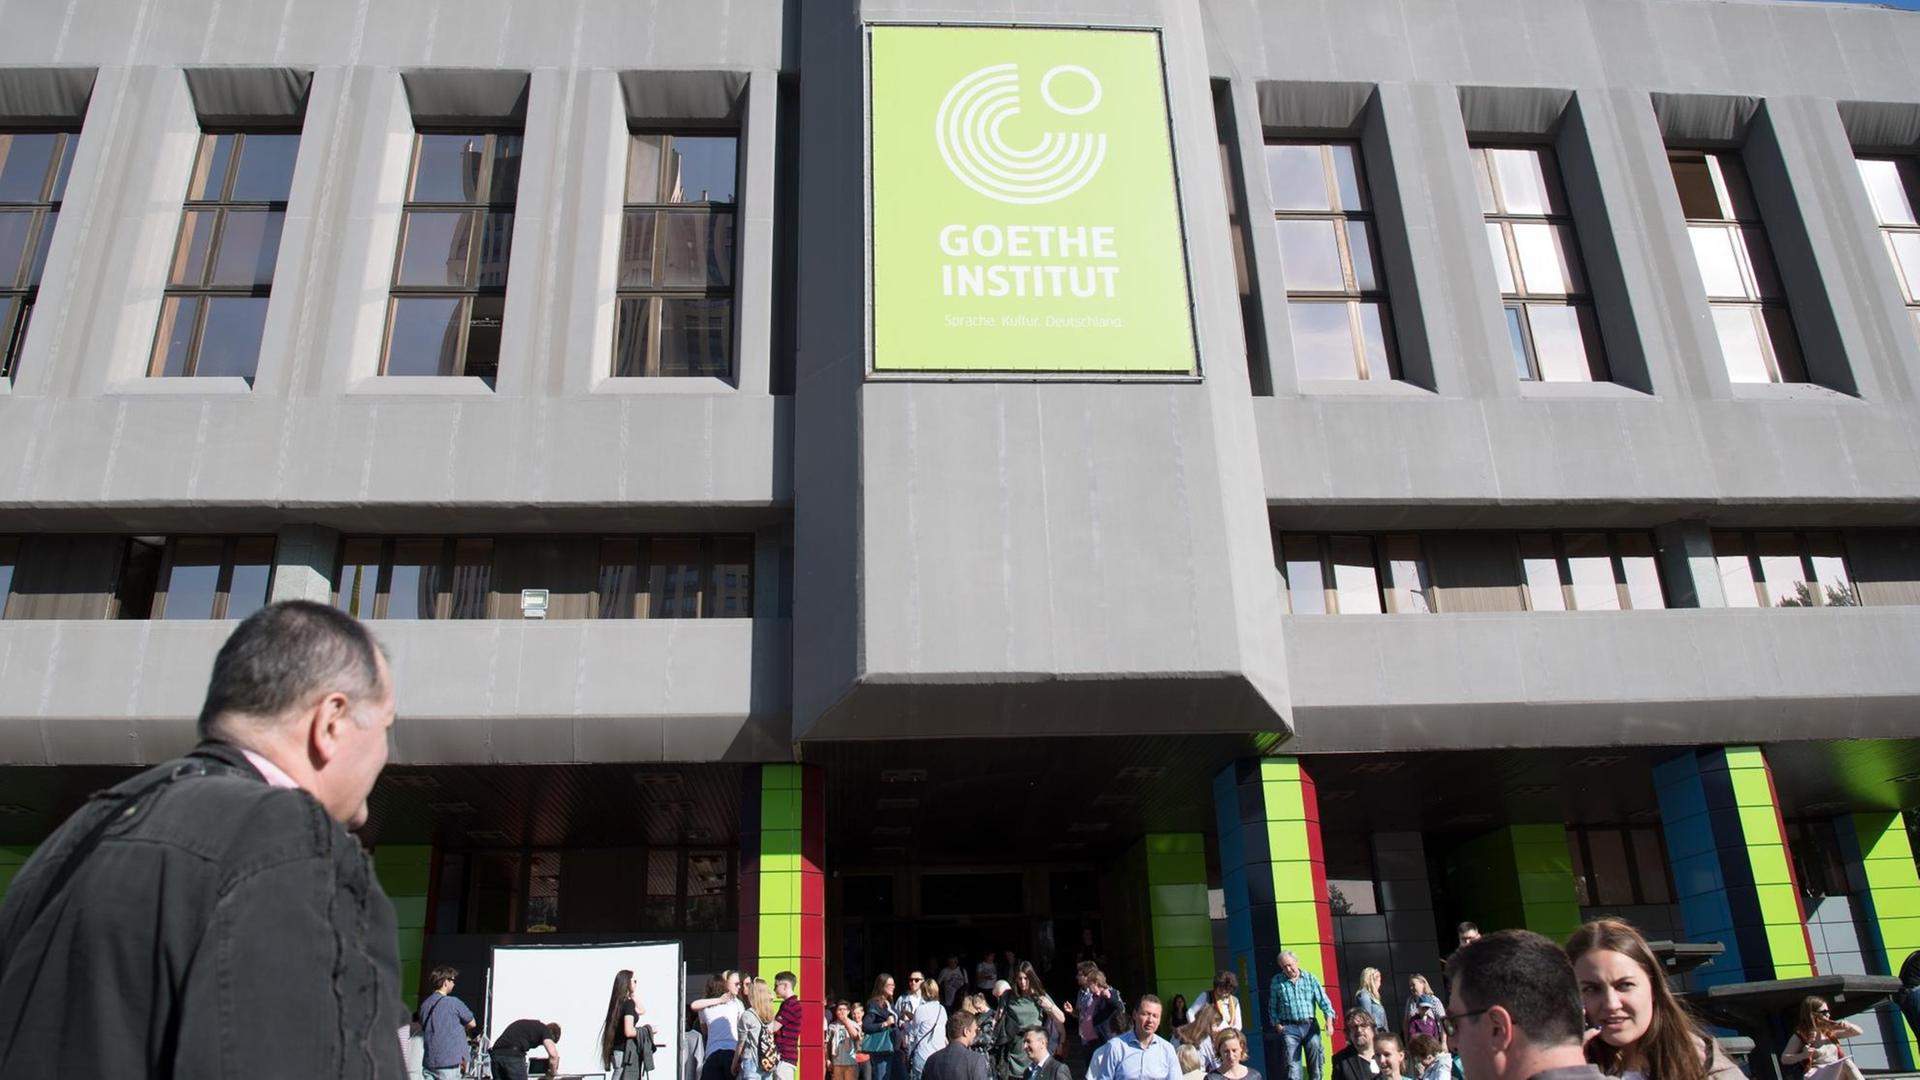 Das Foto zeigt das Goethe-Institut in Moskau. Vor dem Gebäude stehen und gehen Menschen.